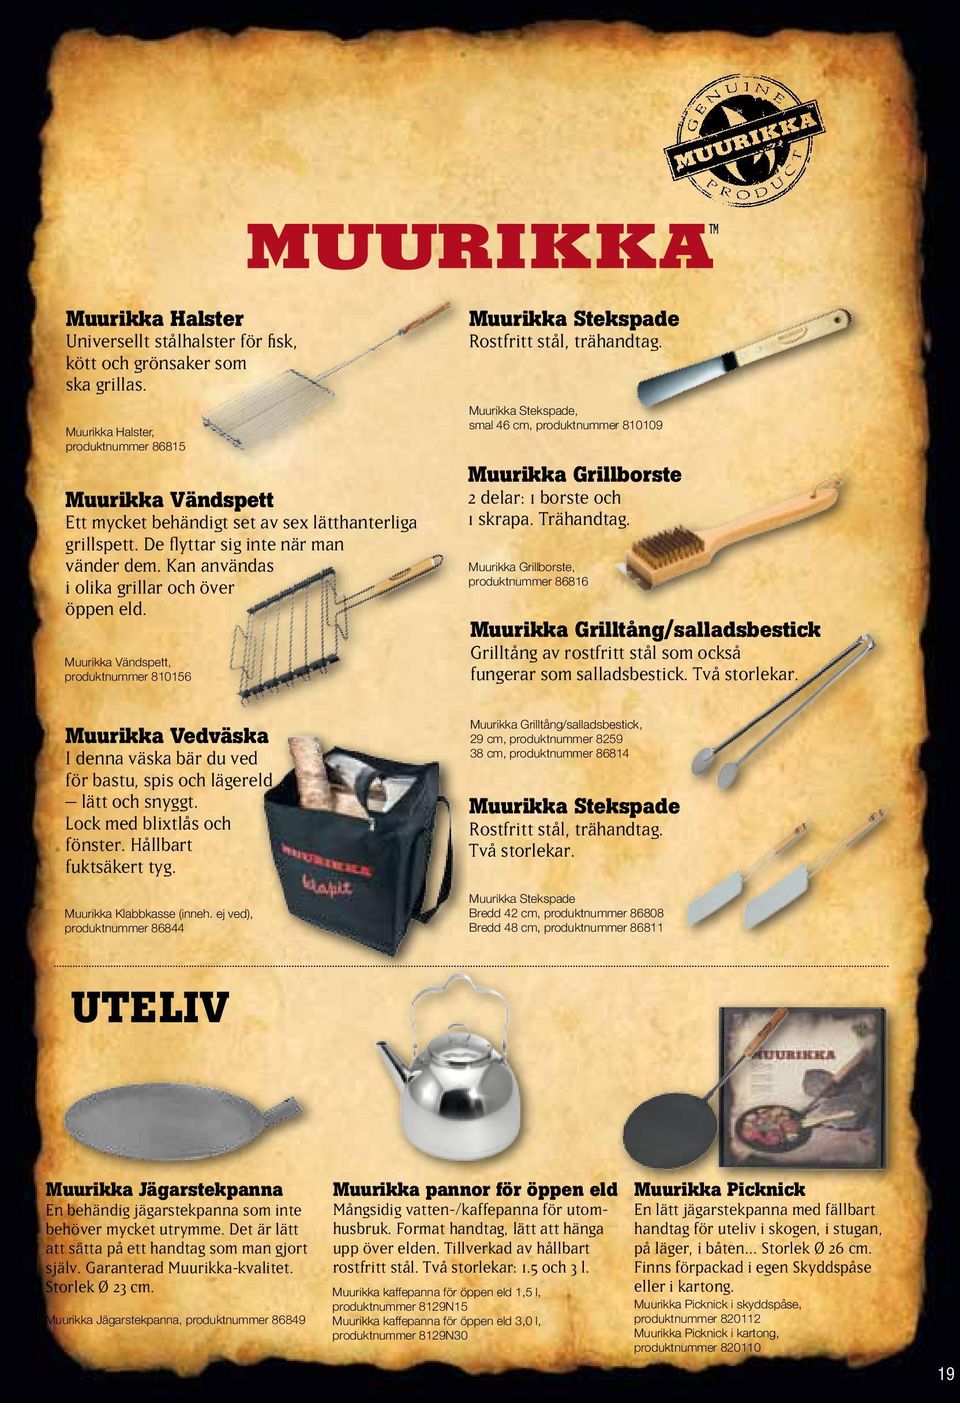 Kan användas i olika grillar och över öppen eld. Muurikka Vändspett, produktnummer 810156 Muurikka Stekspade Rostfritt stål, trähandtag.